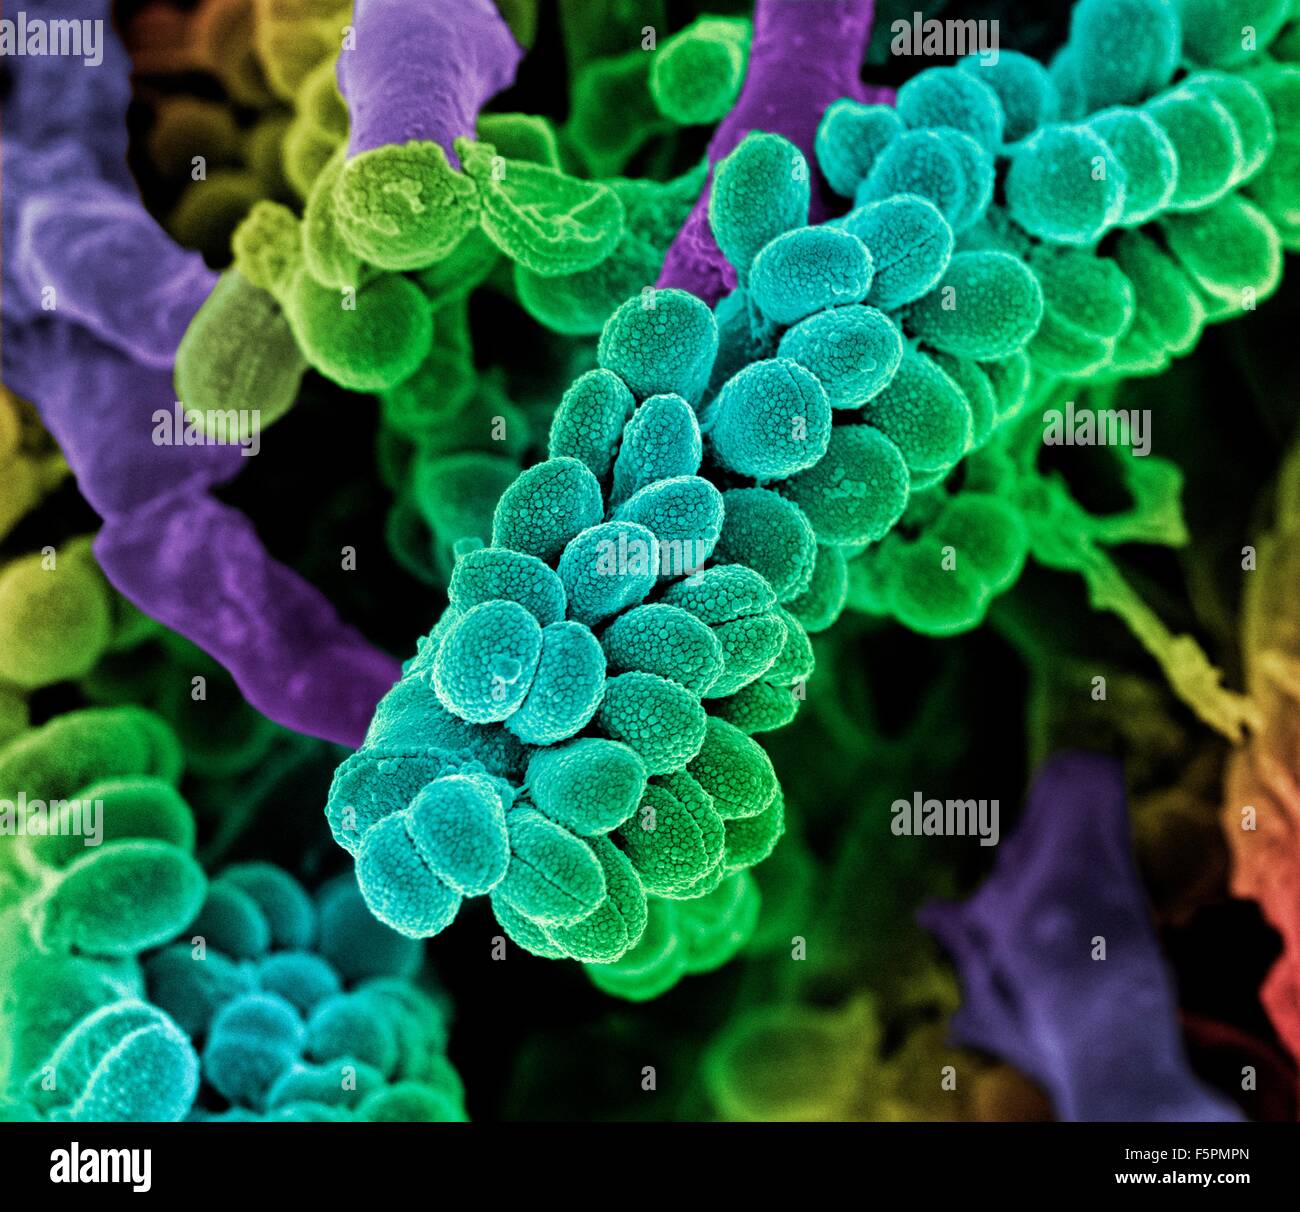 Streptococcus bacteria immagini e fotografie stock ad alta risoluzione -  Alamy